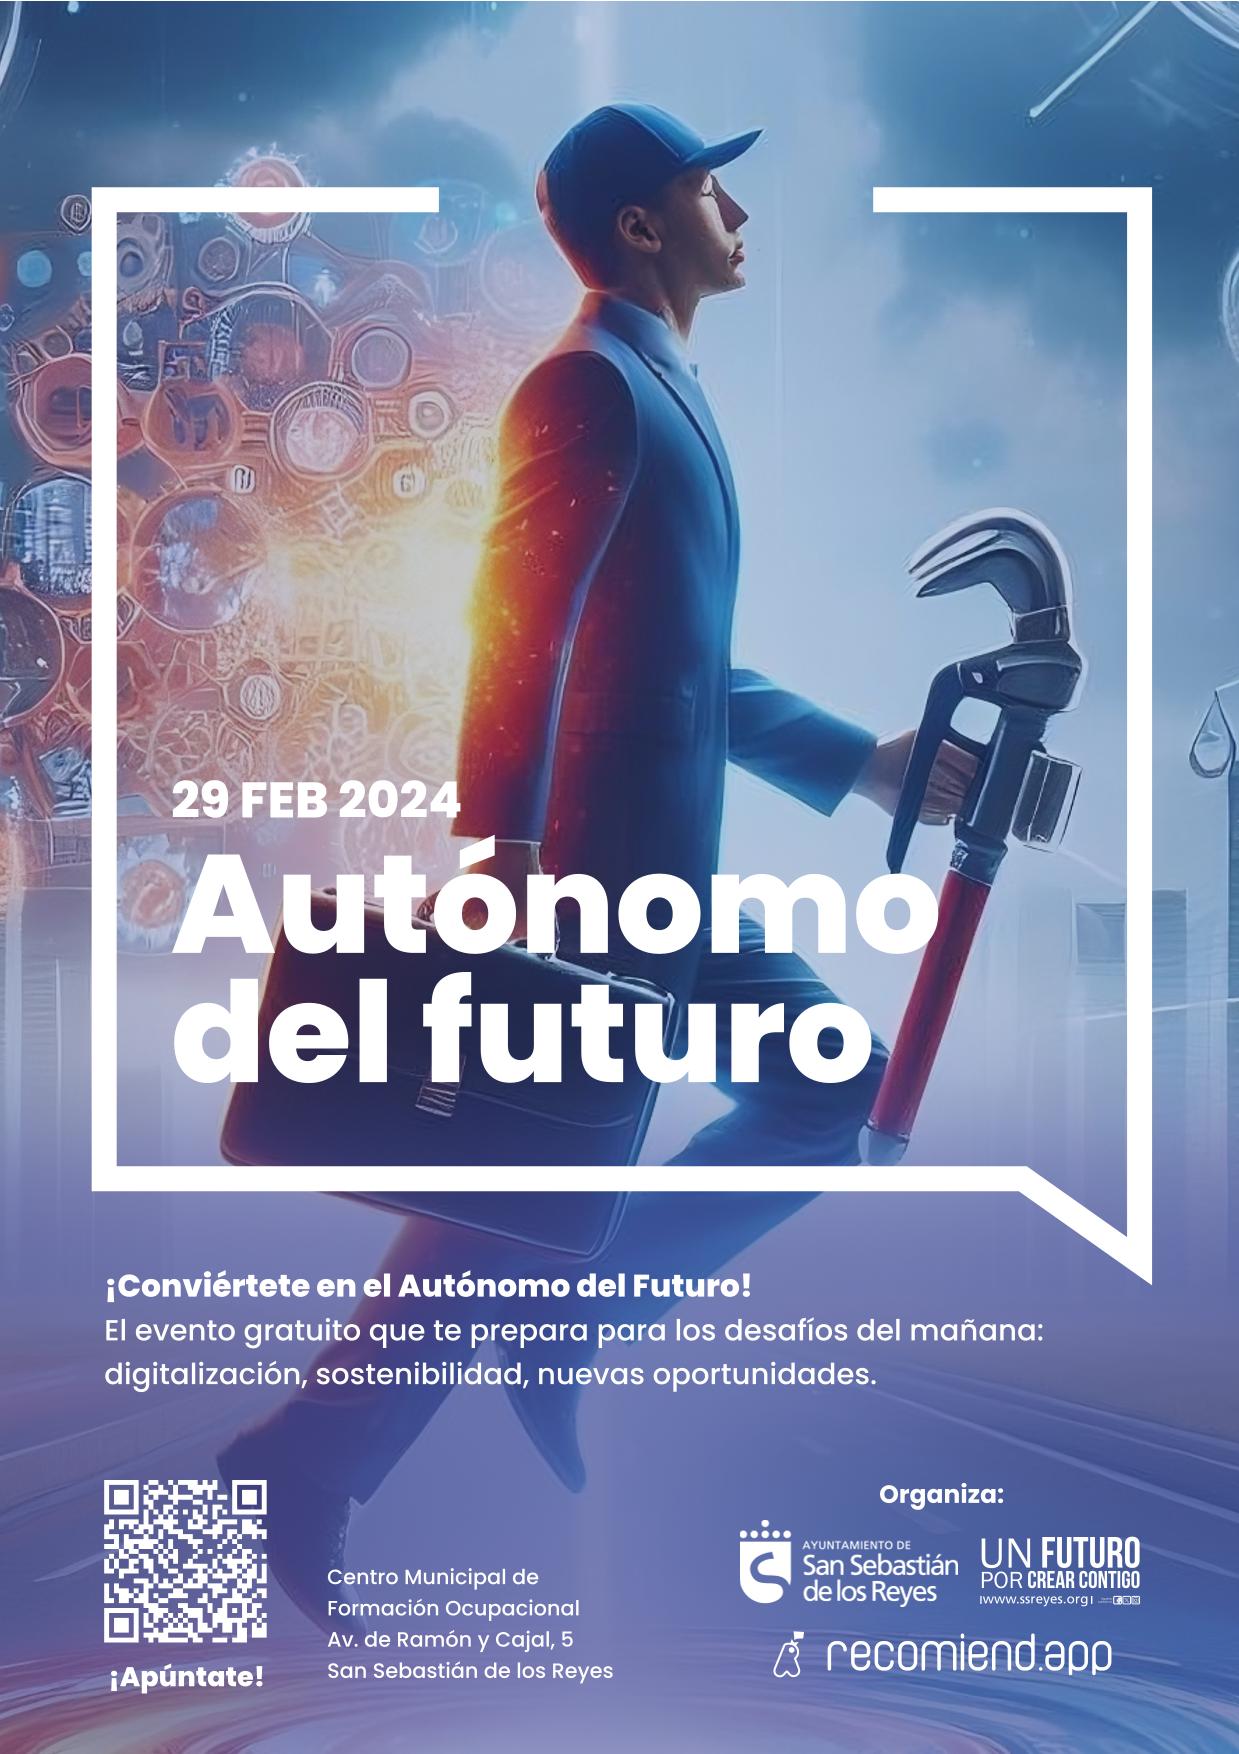 El evento “Autónomo del futuro” llega a San Sebastián de los Reyes para digitalizar a personas autónomas y profesionales locales